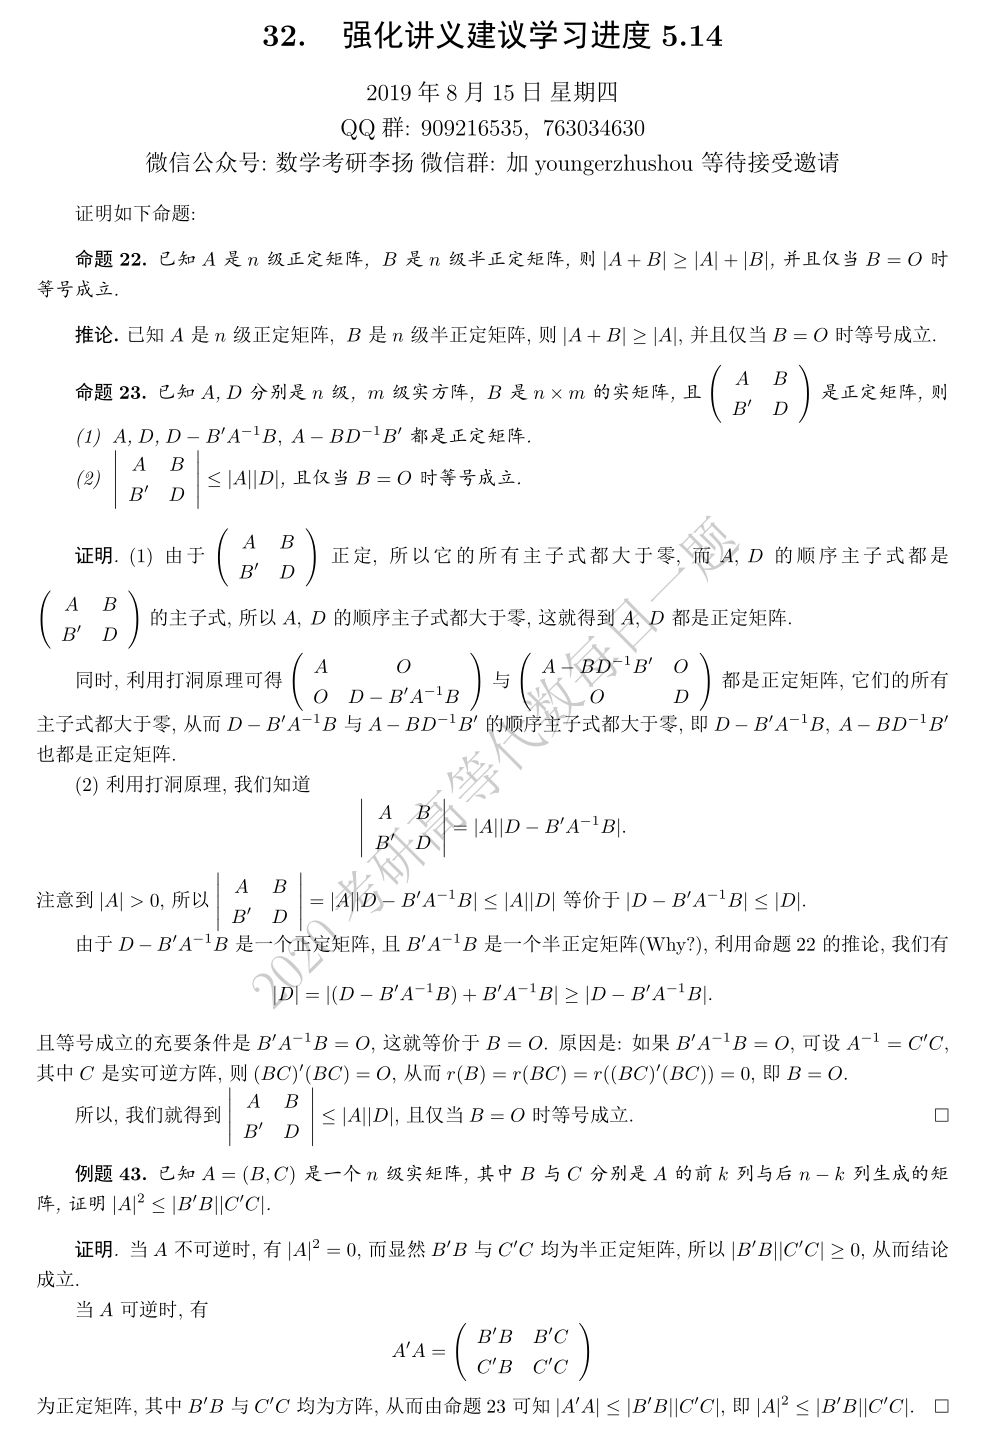 上海交通大学 难考了 数学考研李扬 微信公众号文章阅读 Wemp